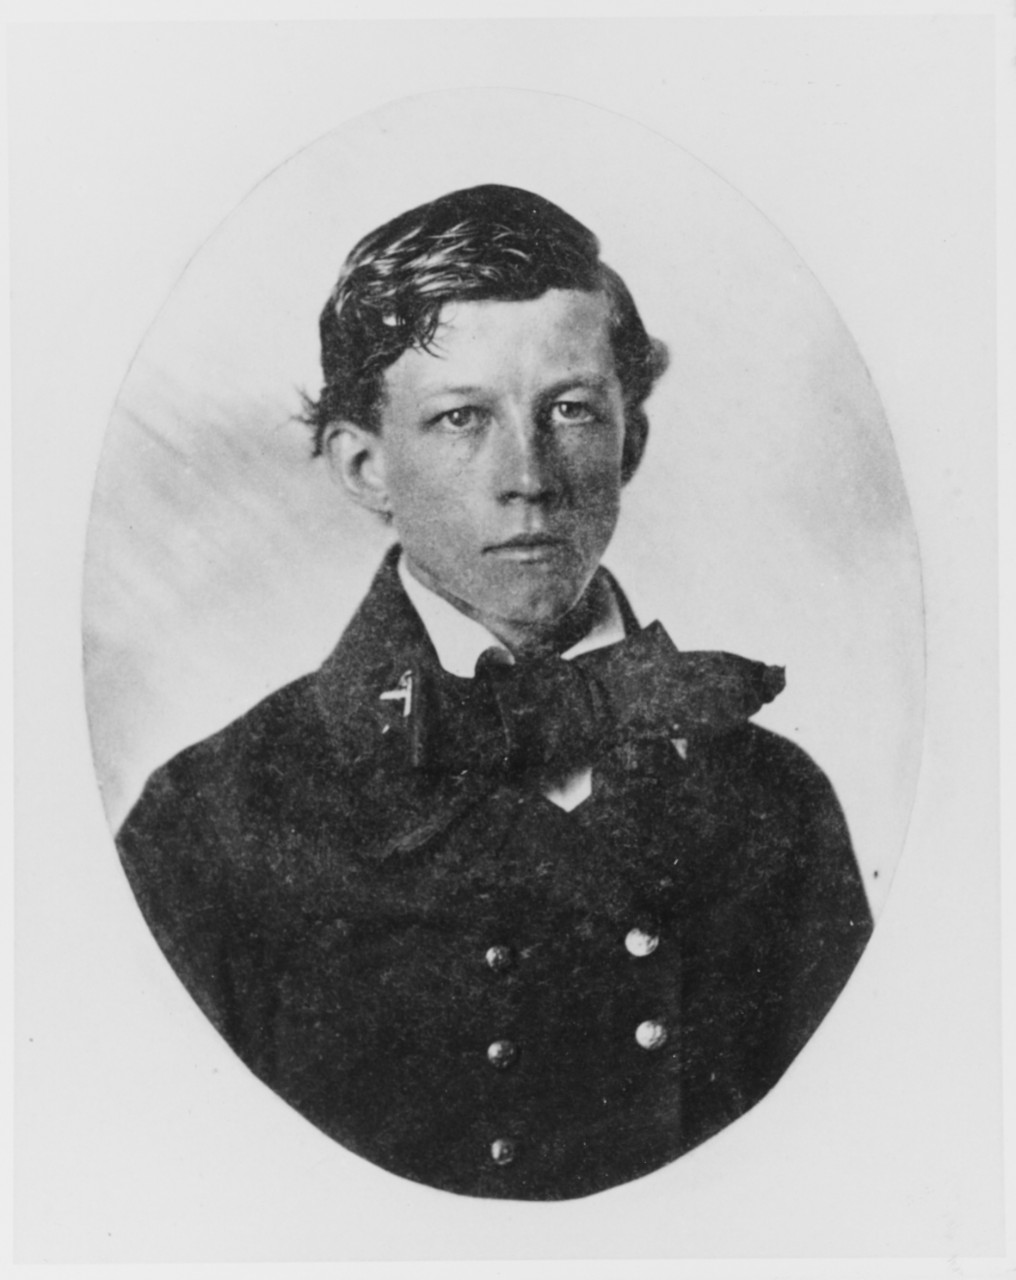 Midshipman George M. Blodgett, USN